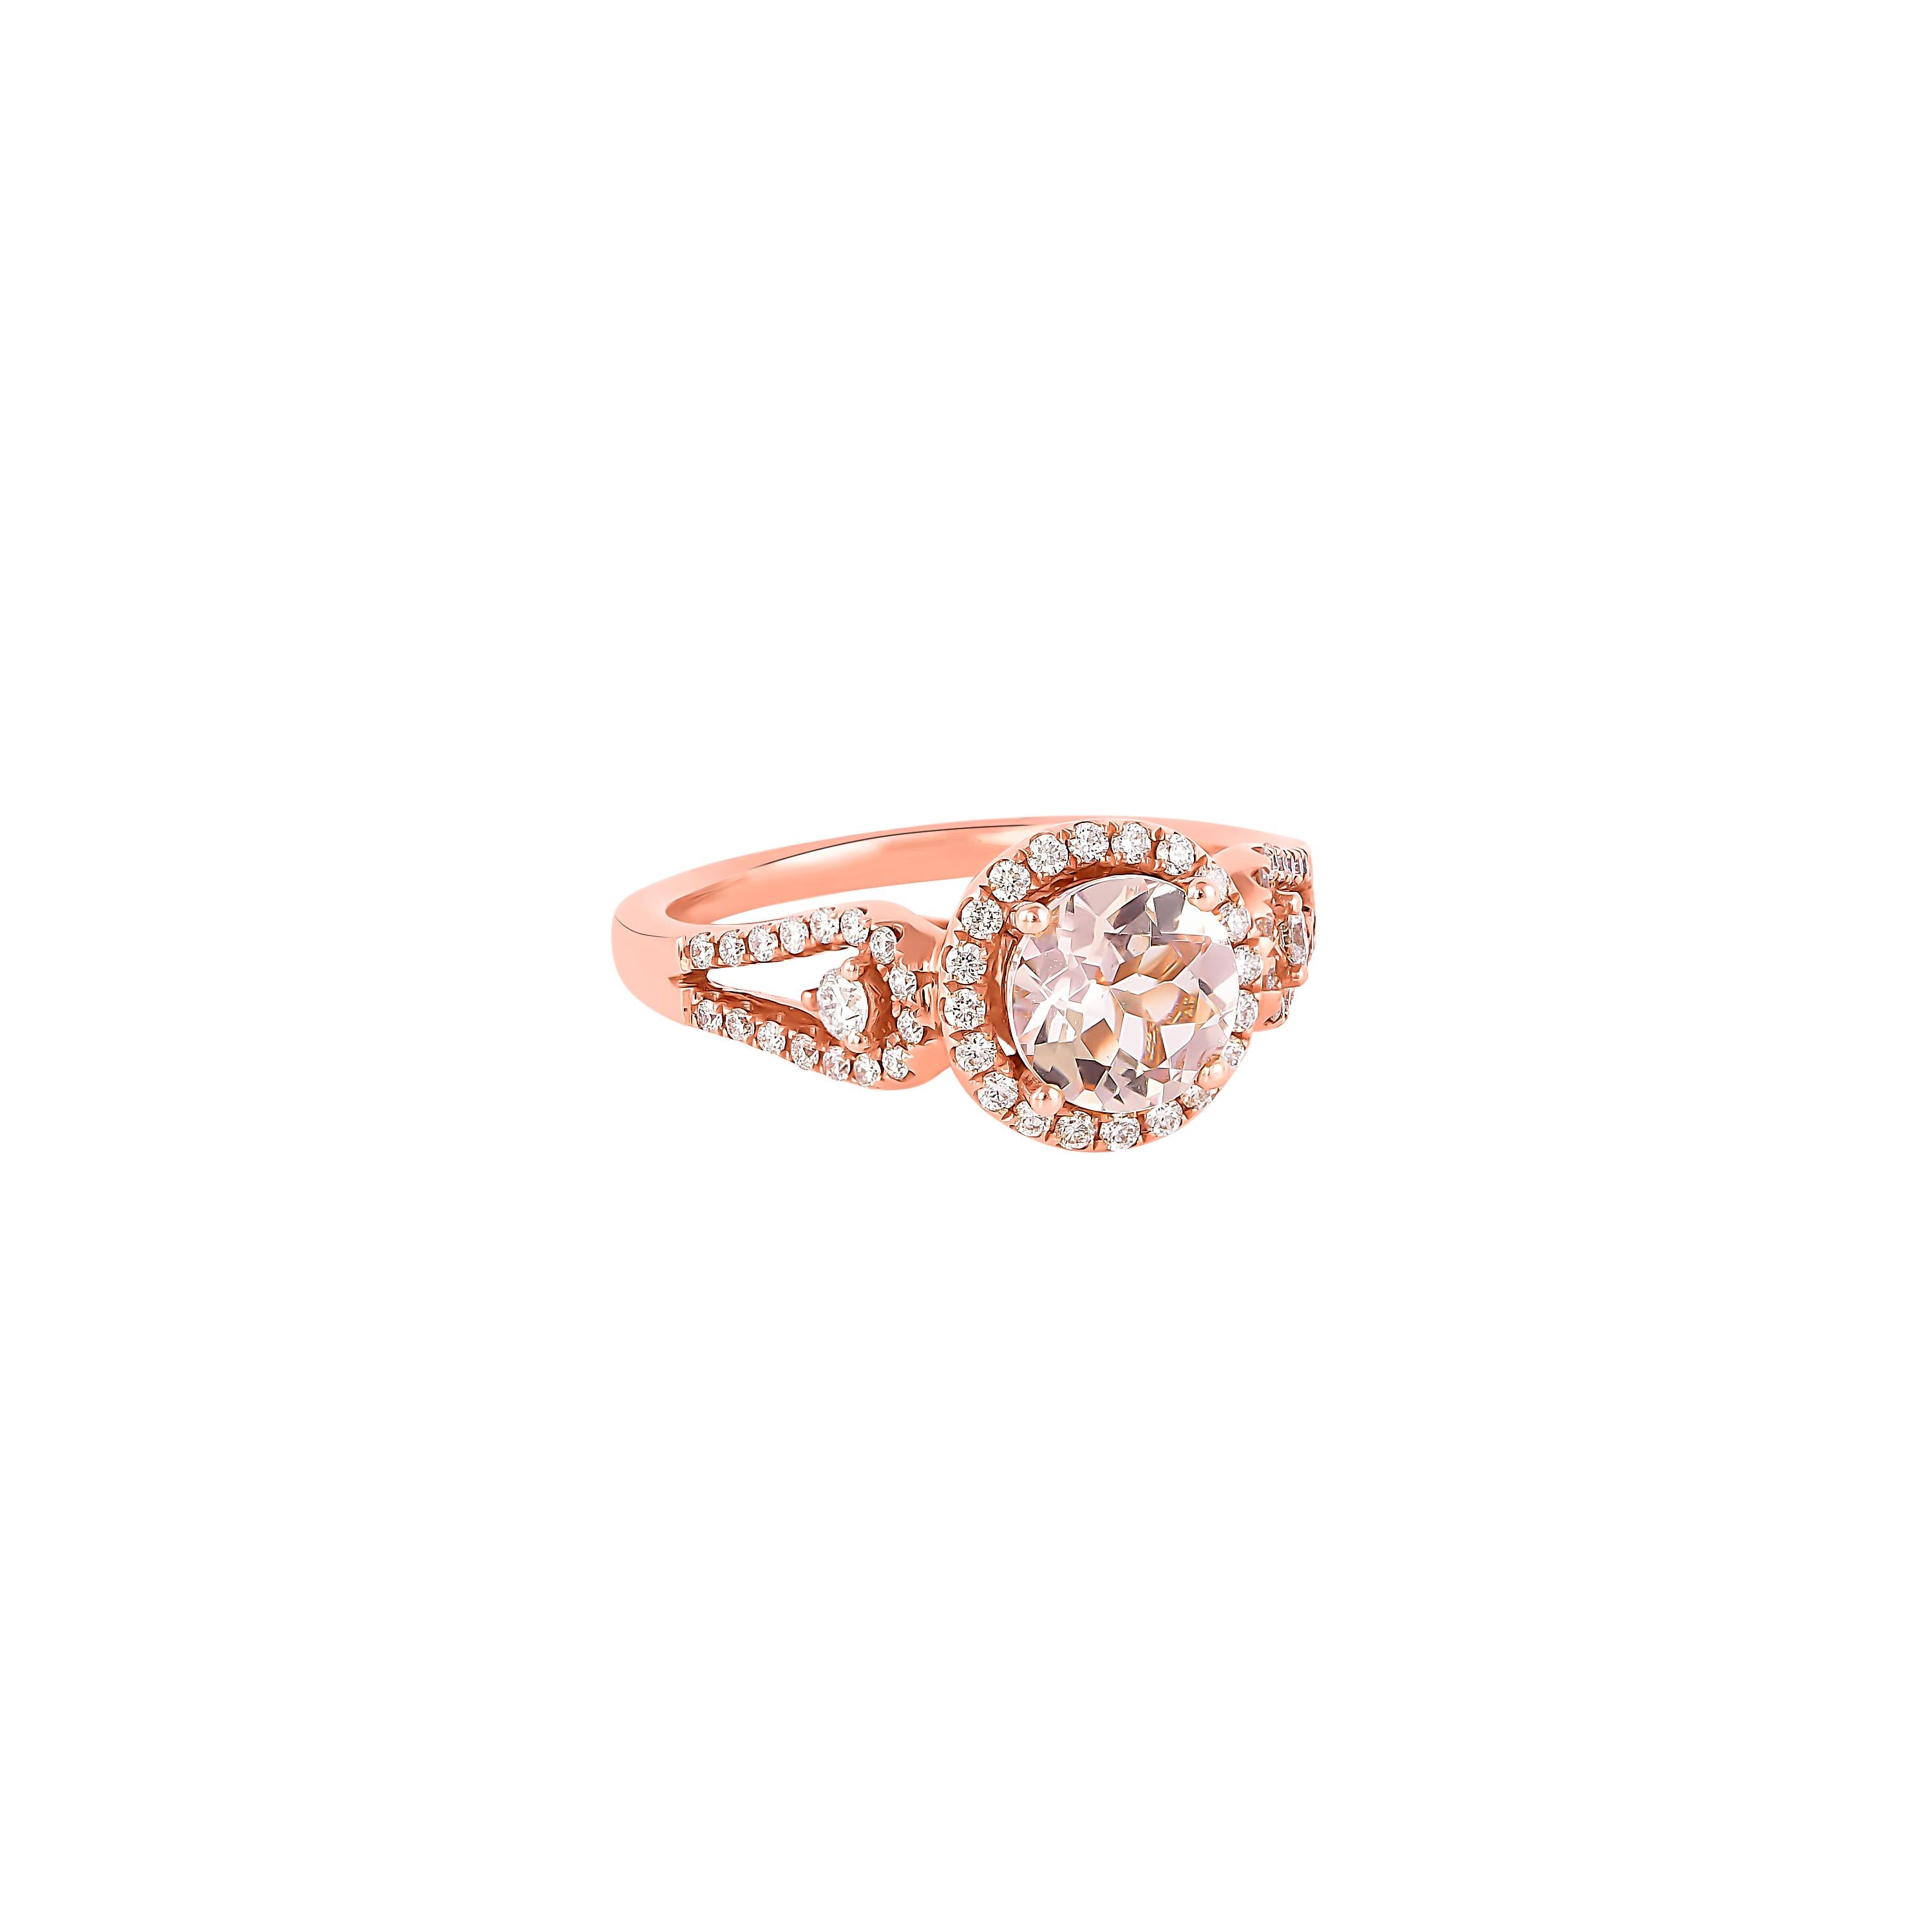 Diese Kollektion bietet eine Reihe von prächtigen Morganiten! Die mit Diamanten besetzten Ringe sind aus Roségold gefertigt und wirken klassisch und elegant. 

Klassischer Morganit-Ring aus 18 Karat Roségold mit Diamanten. 

Morganit: 1,03 Karat,